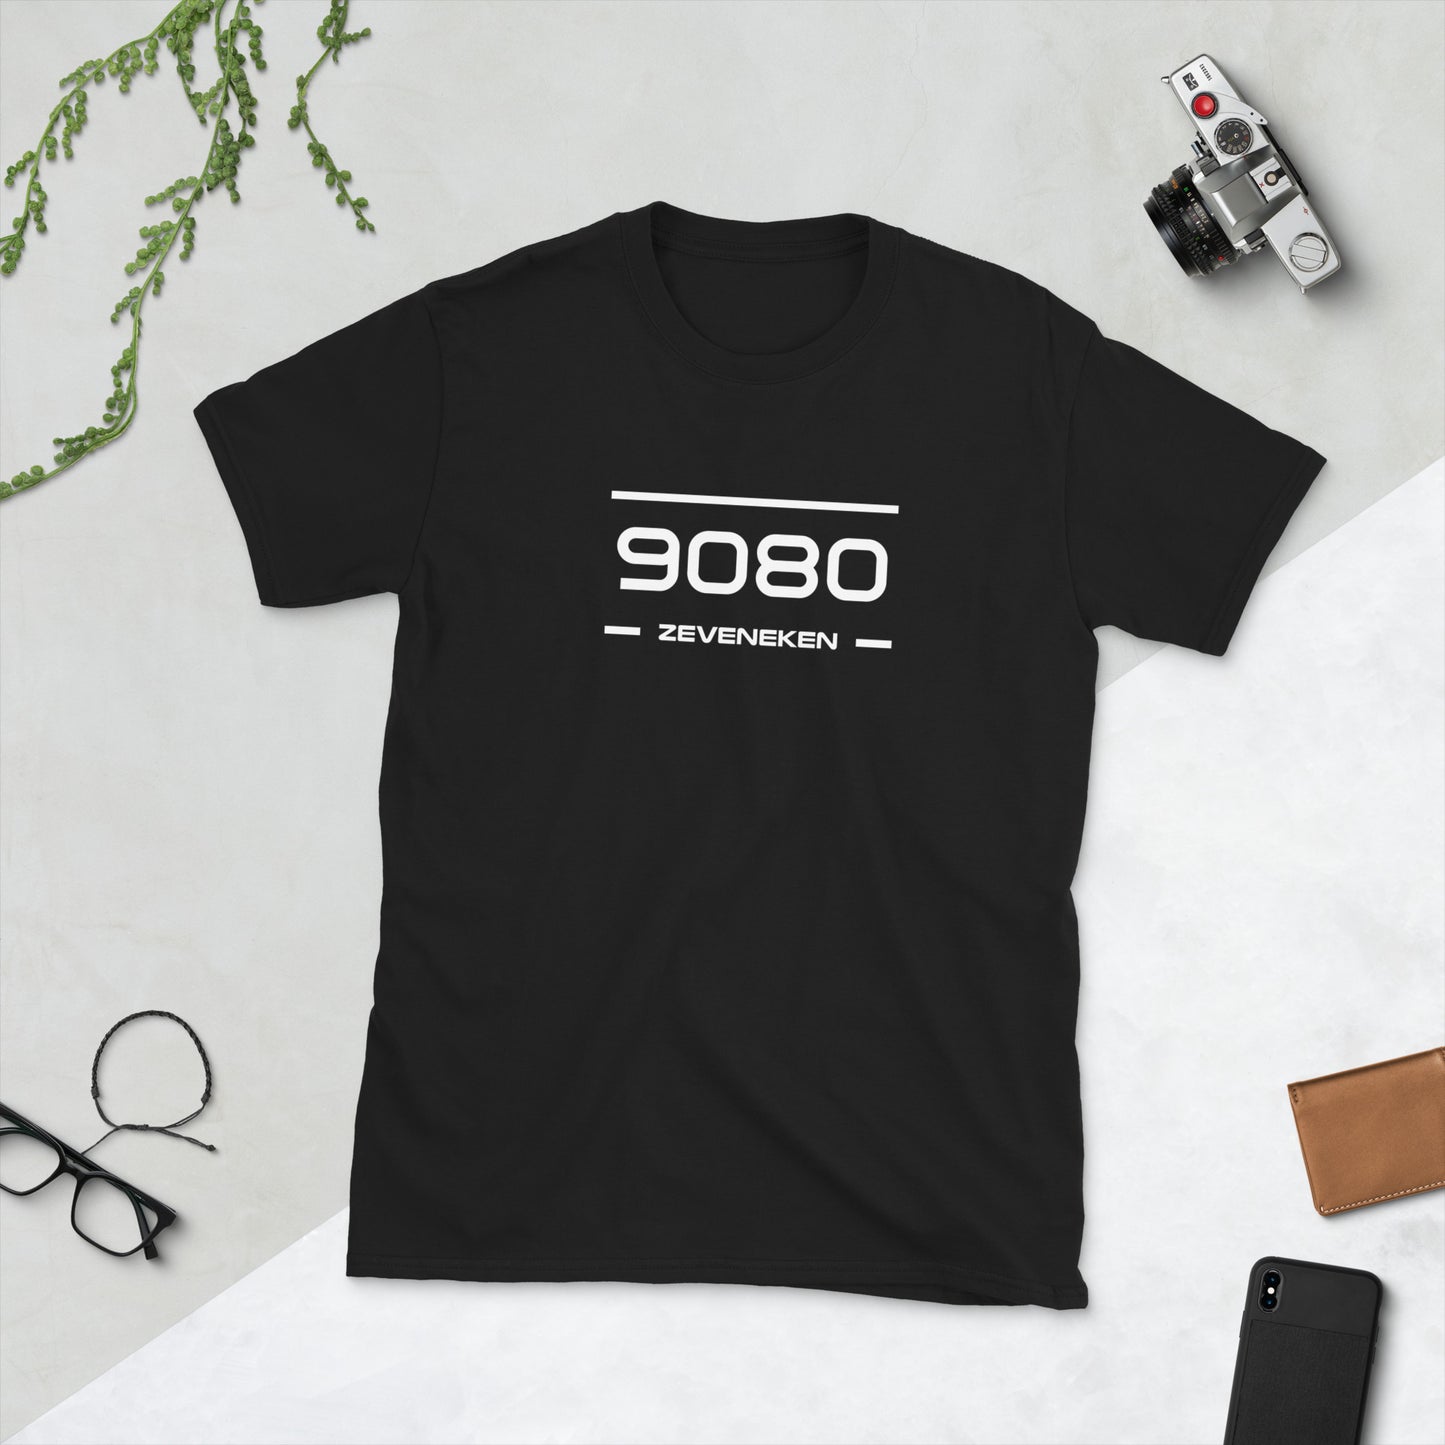 T-Shirt - 9080 - Zeveneken